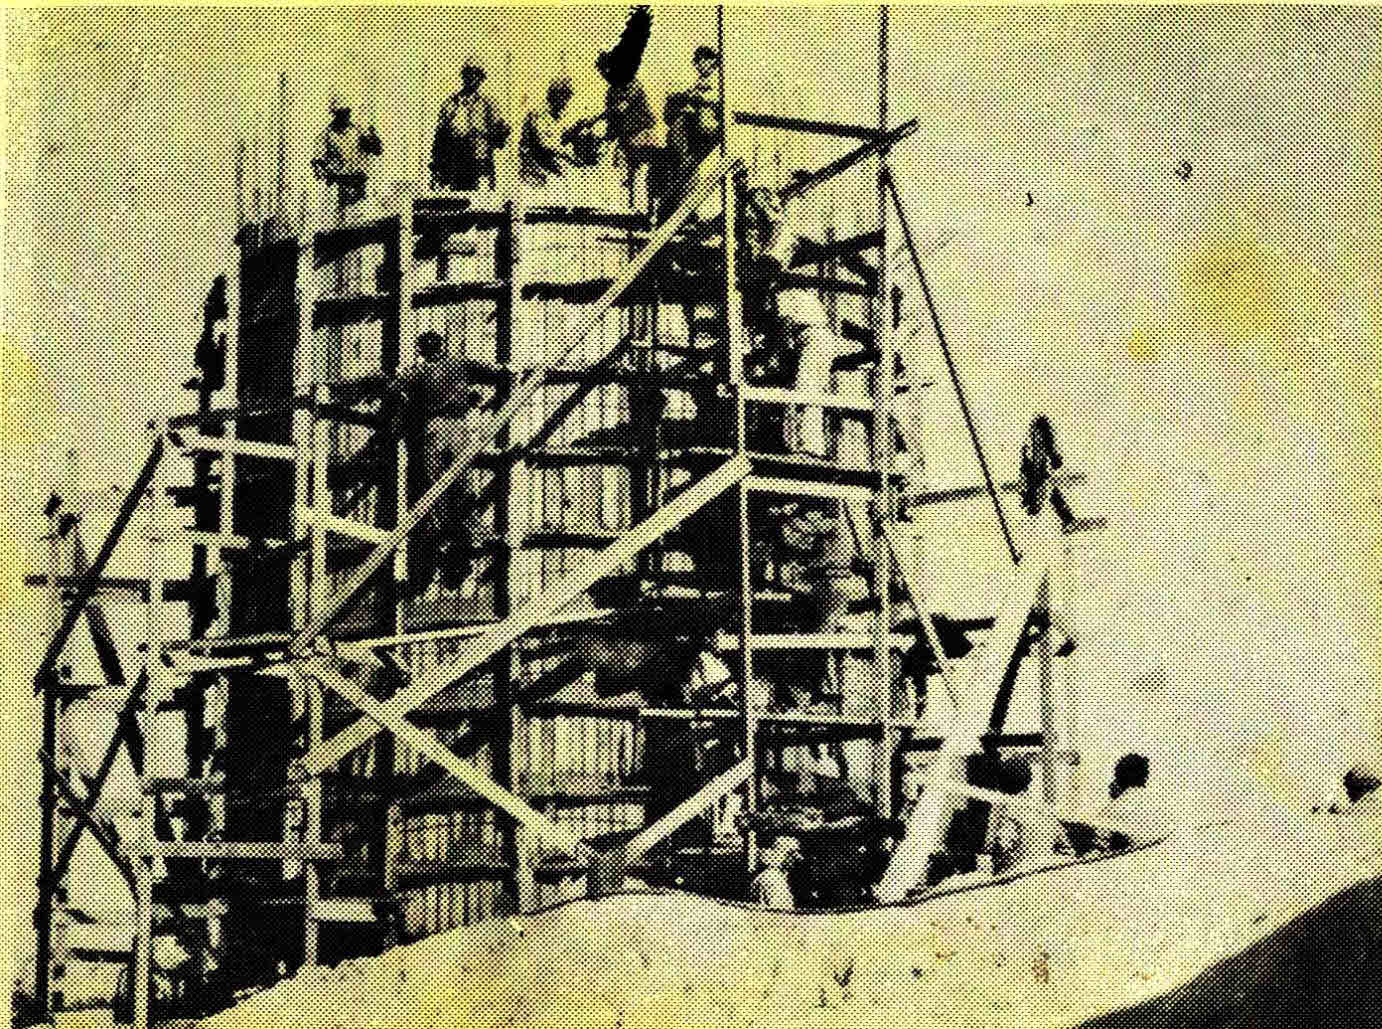 בניית מגדל המים בקיבוץ זיקים - צילום ארכיון באדיבות קיבוץ זיקים